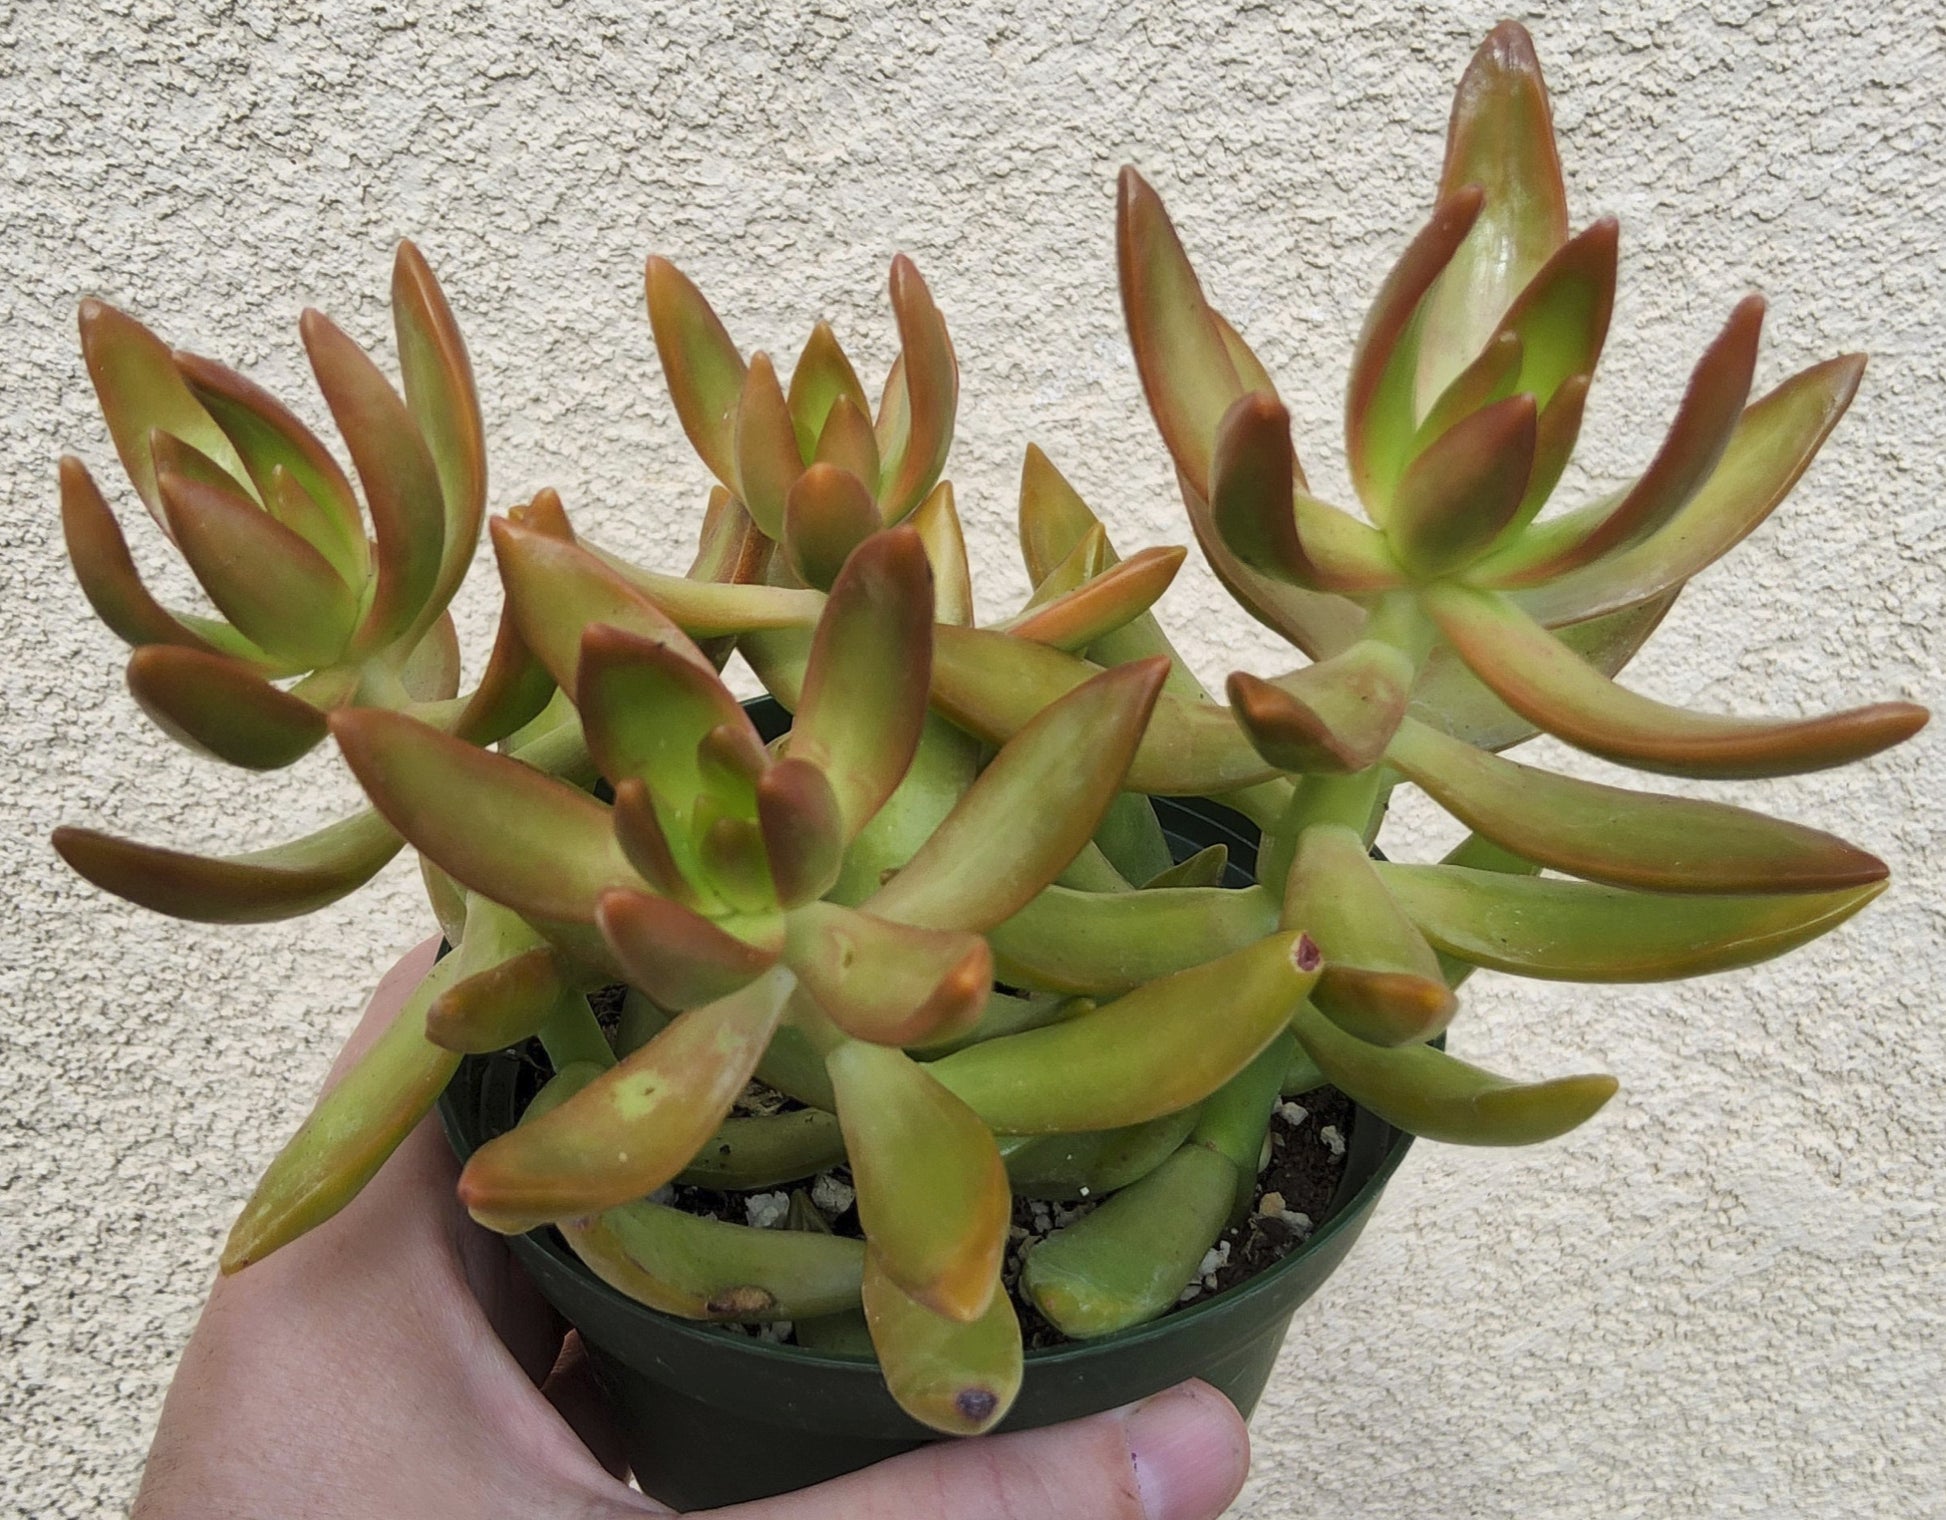 Sedum adolphii Live Succulent Growing in 4 Inch